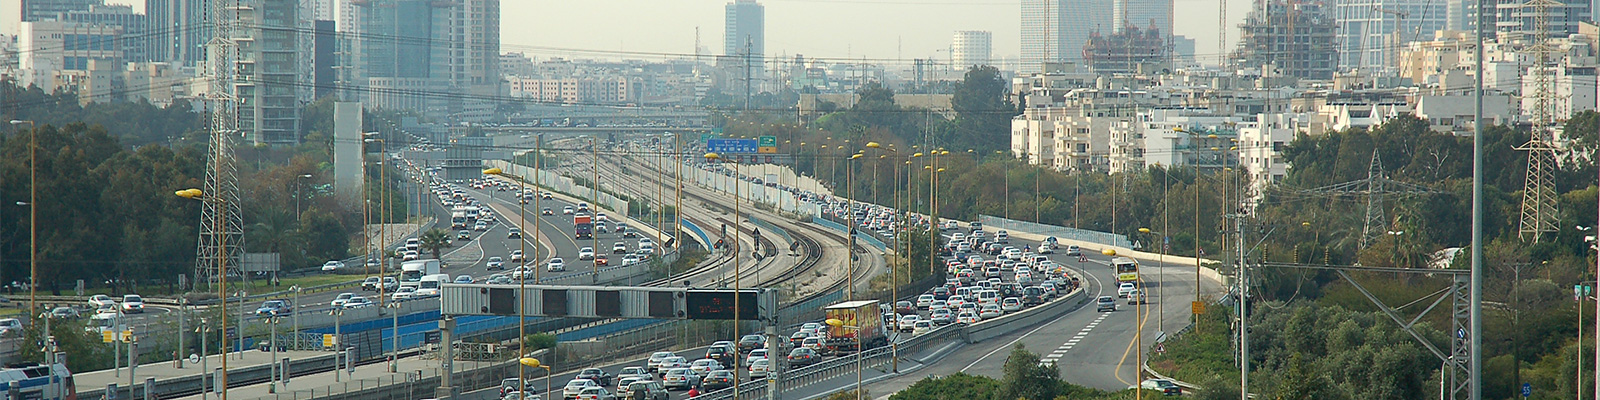 Morning Traffic - Tel Aviv